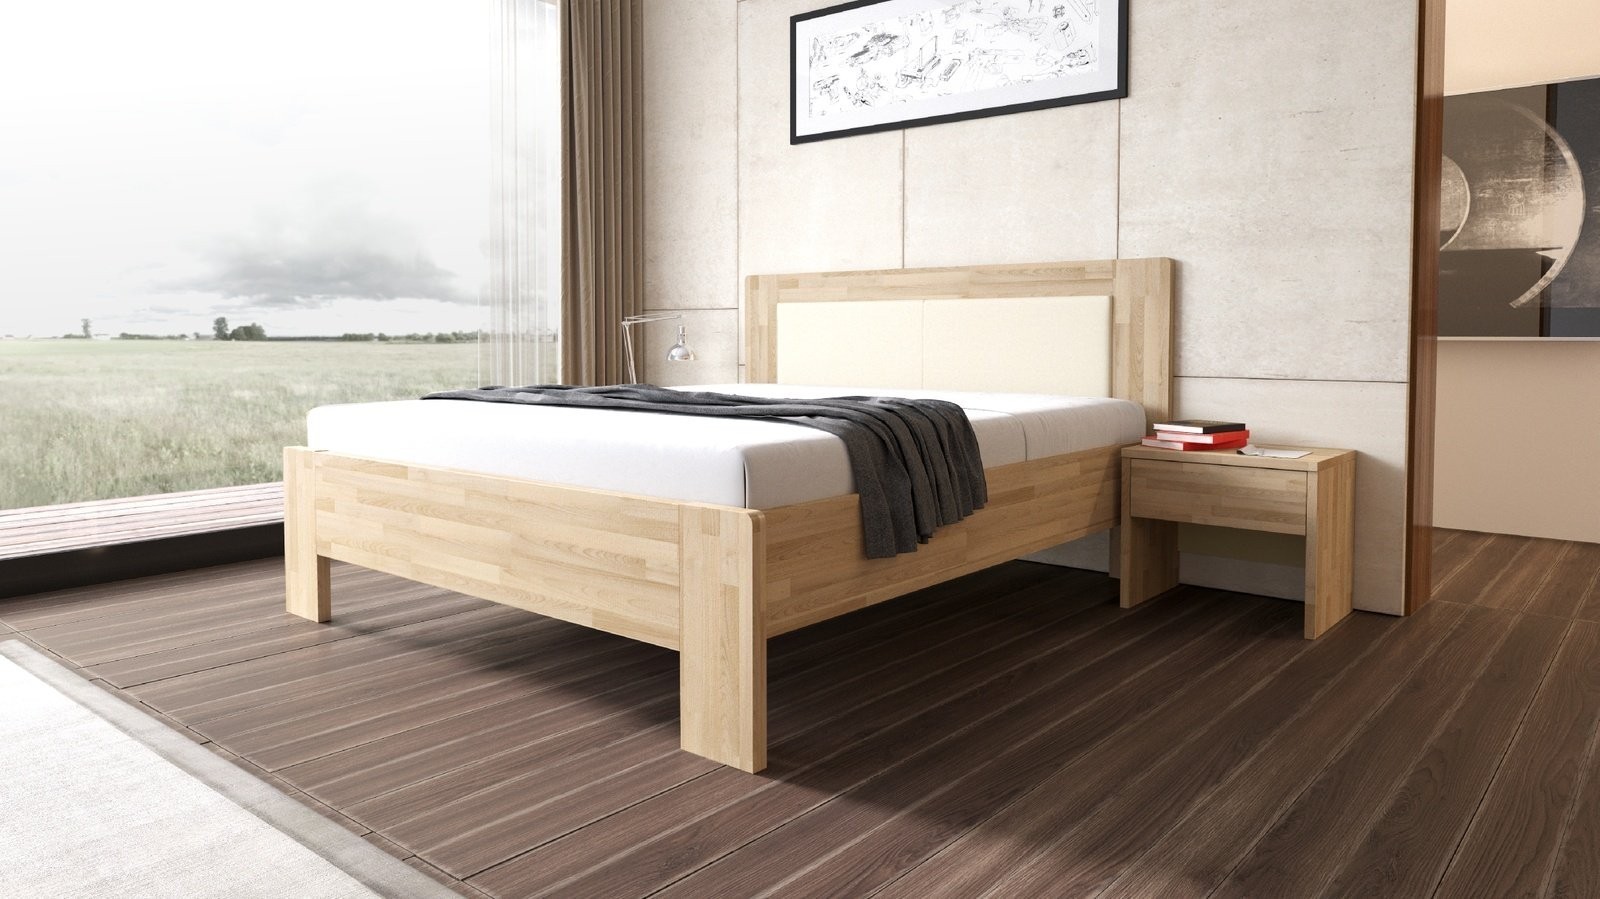 TEXPOL LÍVIA - masivní dubová postel s čalouněným čelem 160 x 200 cm, dub masiv + čalouněné čelo